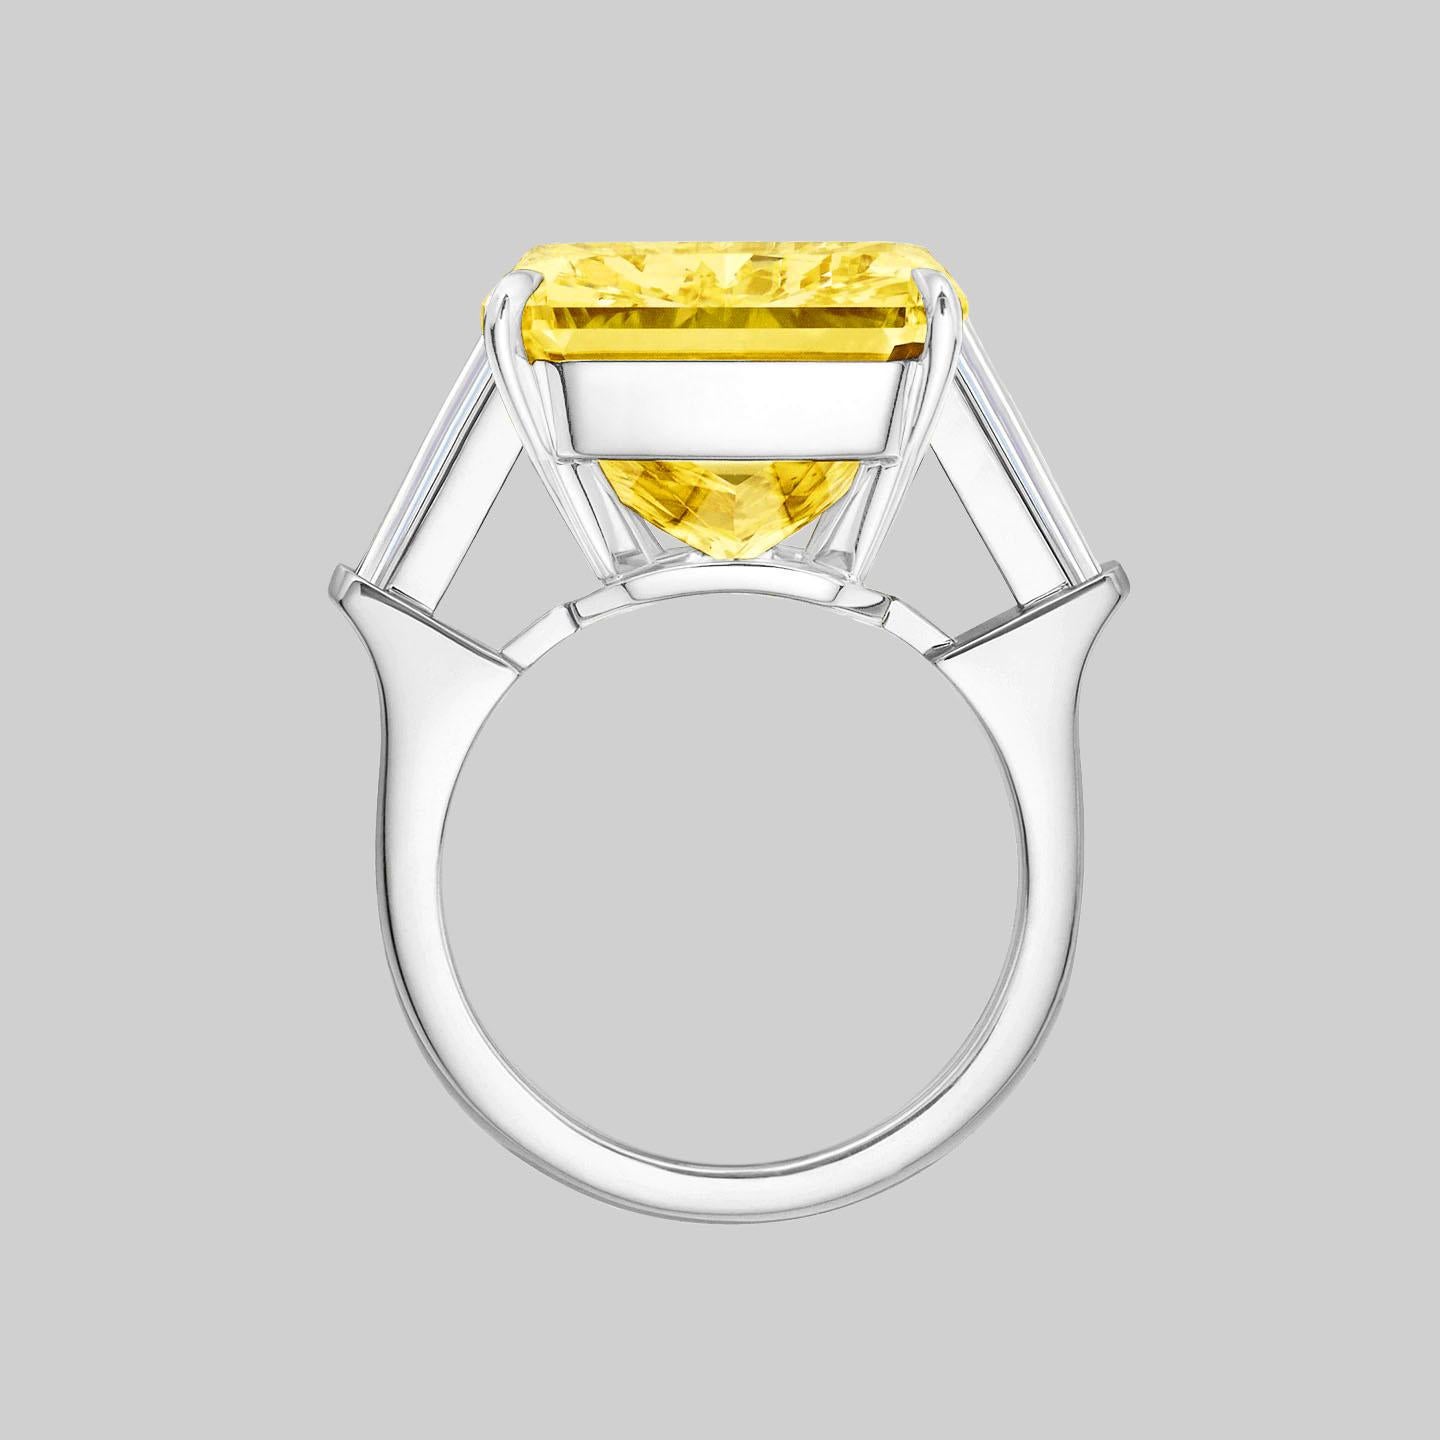 Diamant radiant certifié GIA de 13 carats de couleur jaune fantaisie 100% Eye Clean